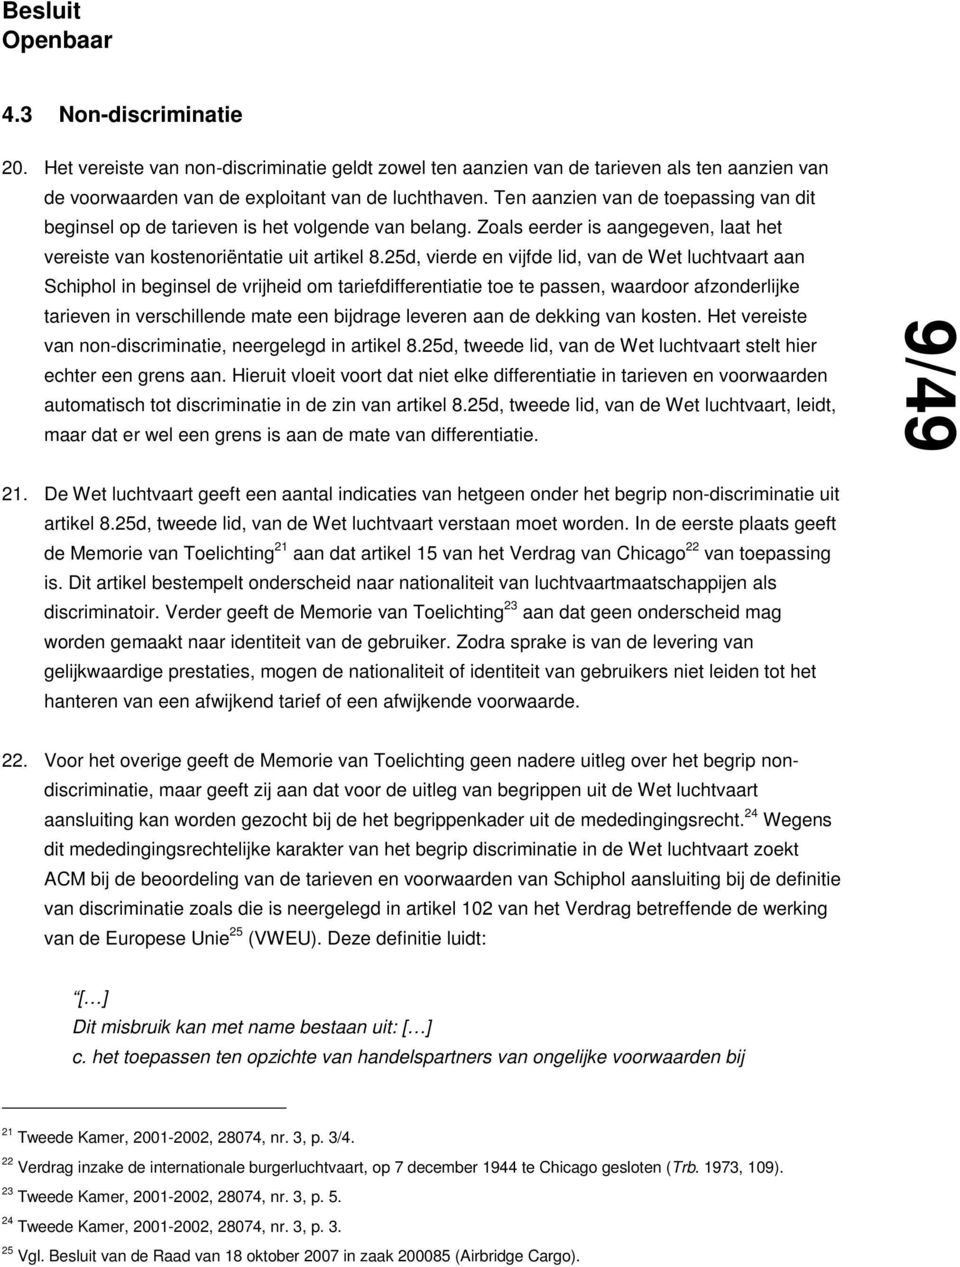 25d, vierde en vijfde lid, van de Wet luchtvaart aan Schiphol in beginsel de vrijheid om tariefdifferentiatie toe te passen, waardoor afzonderlijke tarieven in verschillende mate een bijdrage leveren